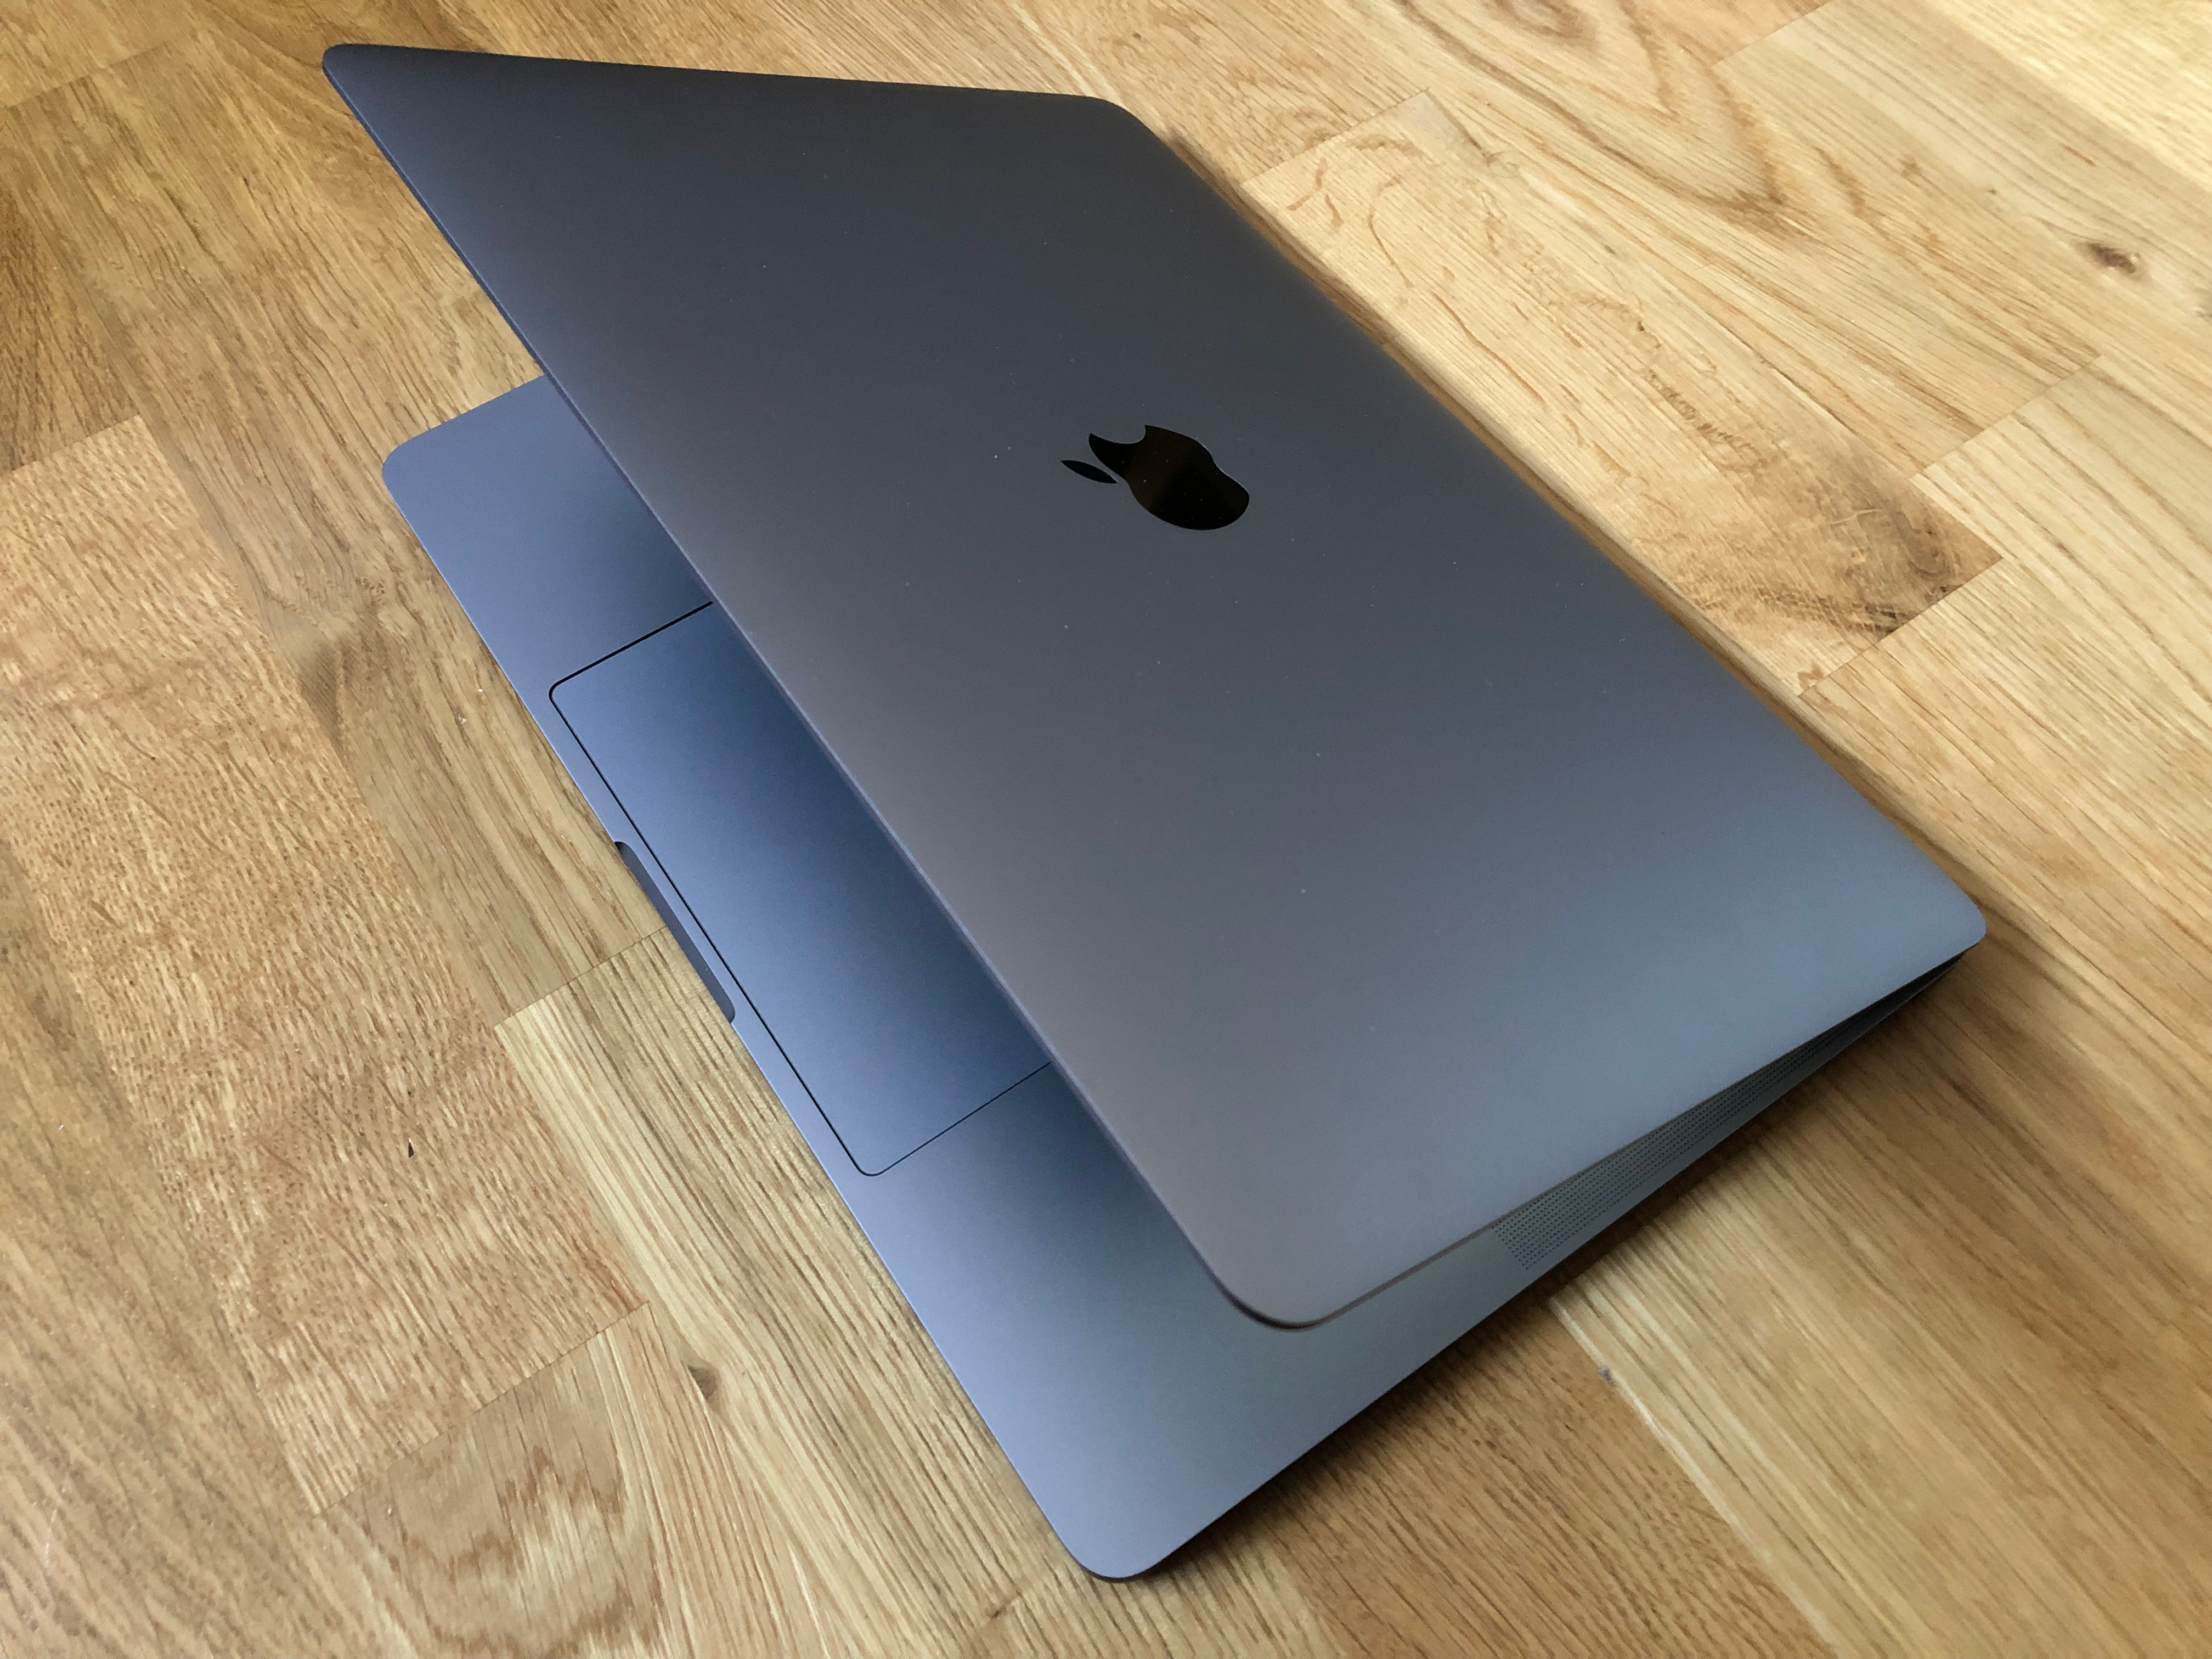 Apple MacBook Air (2018) vs MacBook vs. MacBook Pro: Which